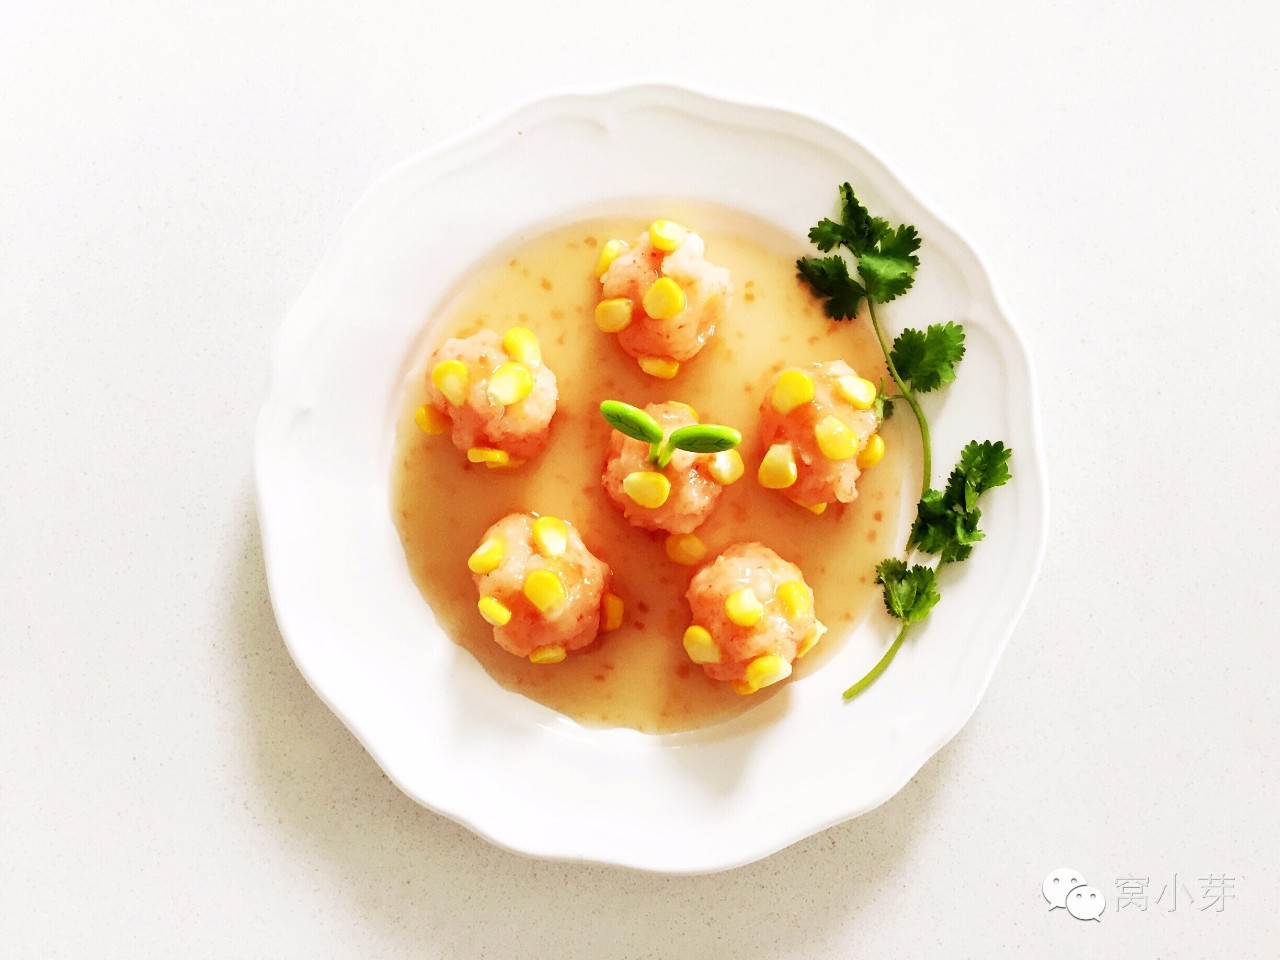 黄金玉米鲜虾球—虾肉的鲜美与玉米的清甜混合在一起，趁热淋上自制酱汁，开始享用吧！